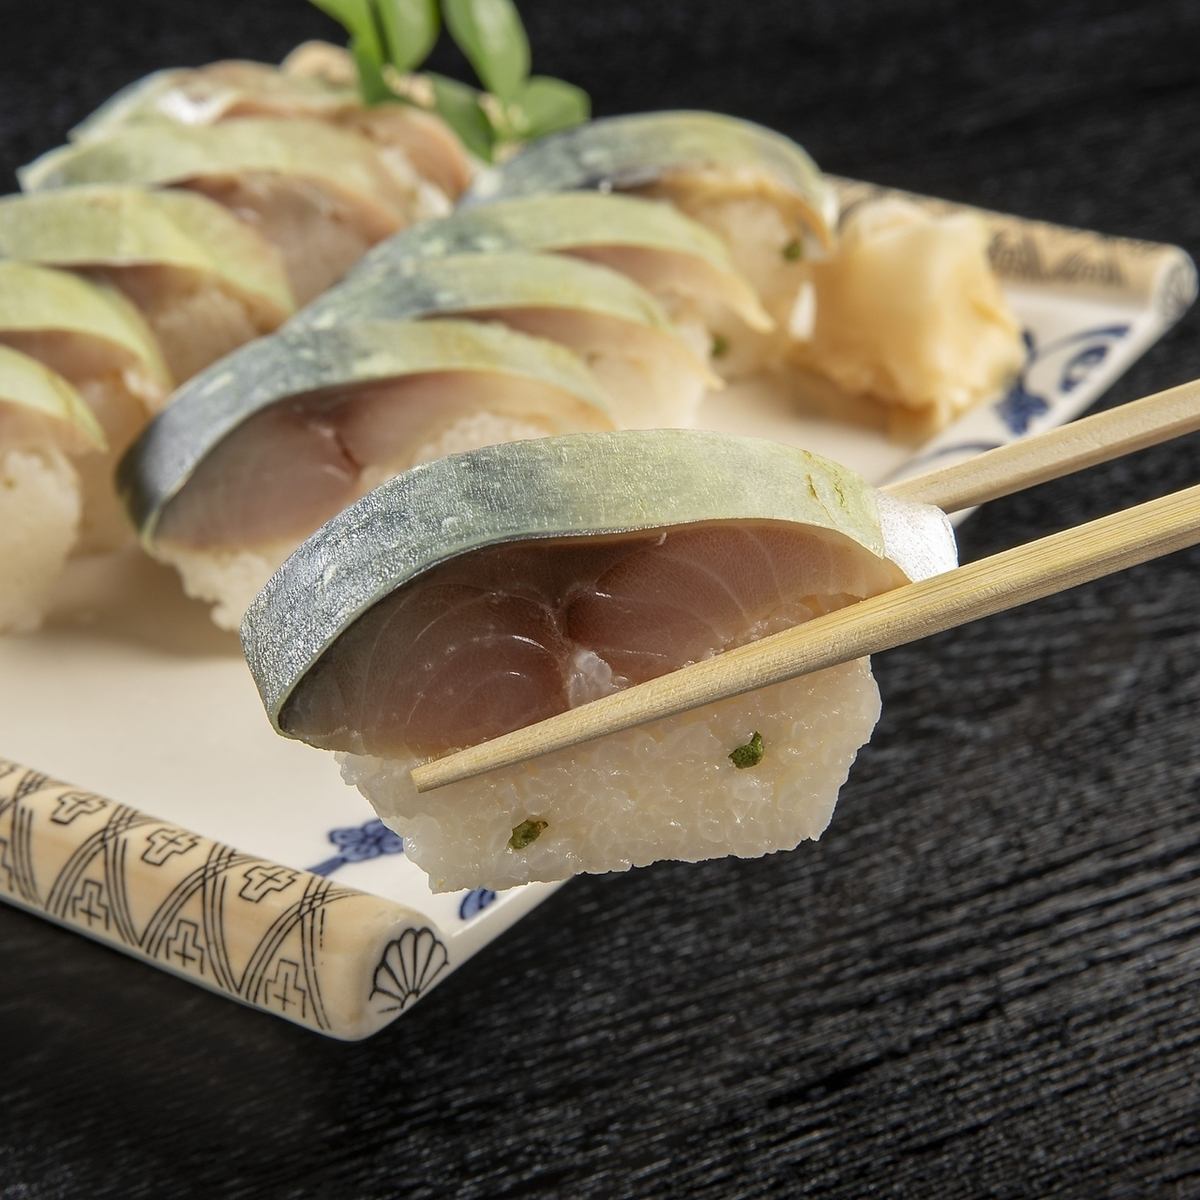 成立於112年前。一定要嚐嚐Sushikei的鯖魚壽司，多年來深受喜愛、歷史悠久的口味！